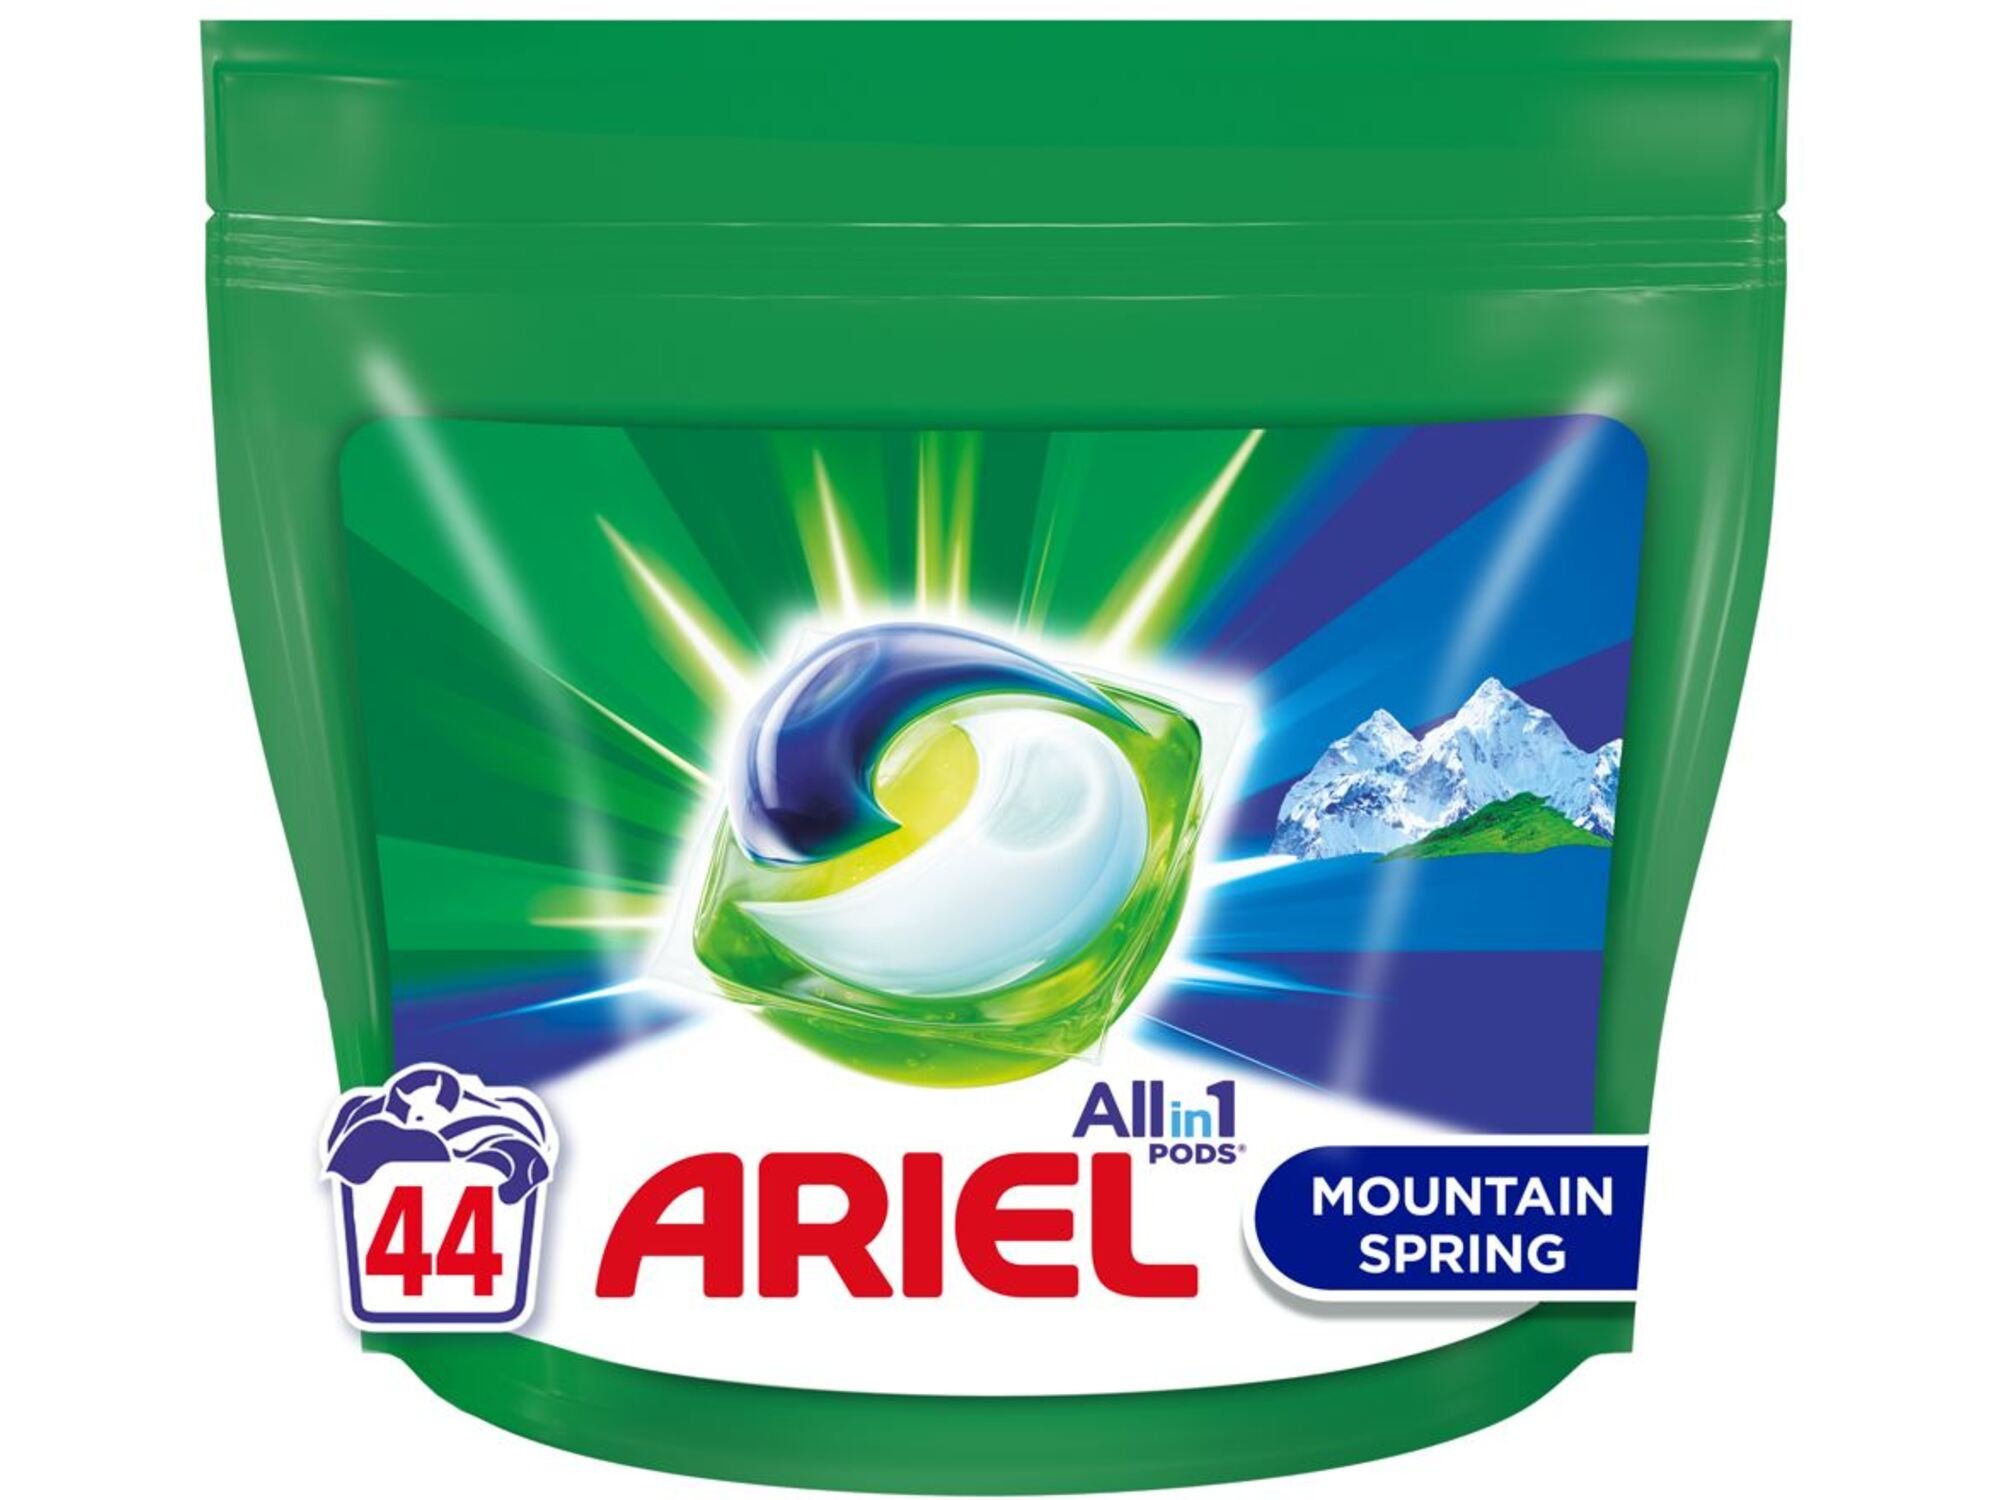 ARIEL kapsule za pranje perila Ariel Mountain Spring, 44kos